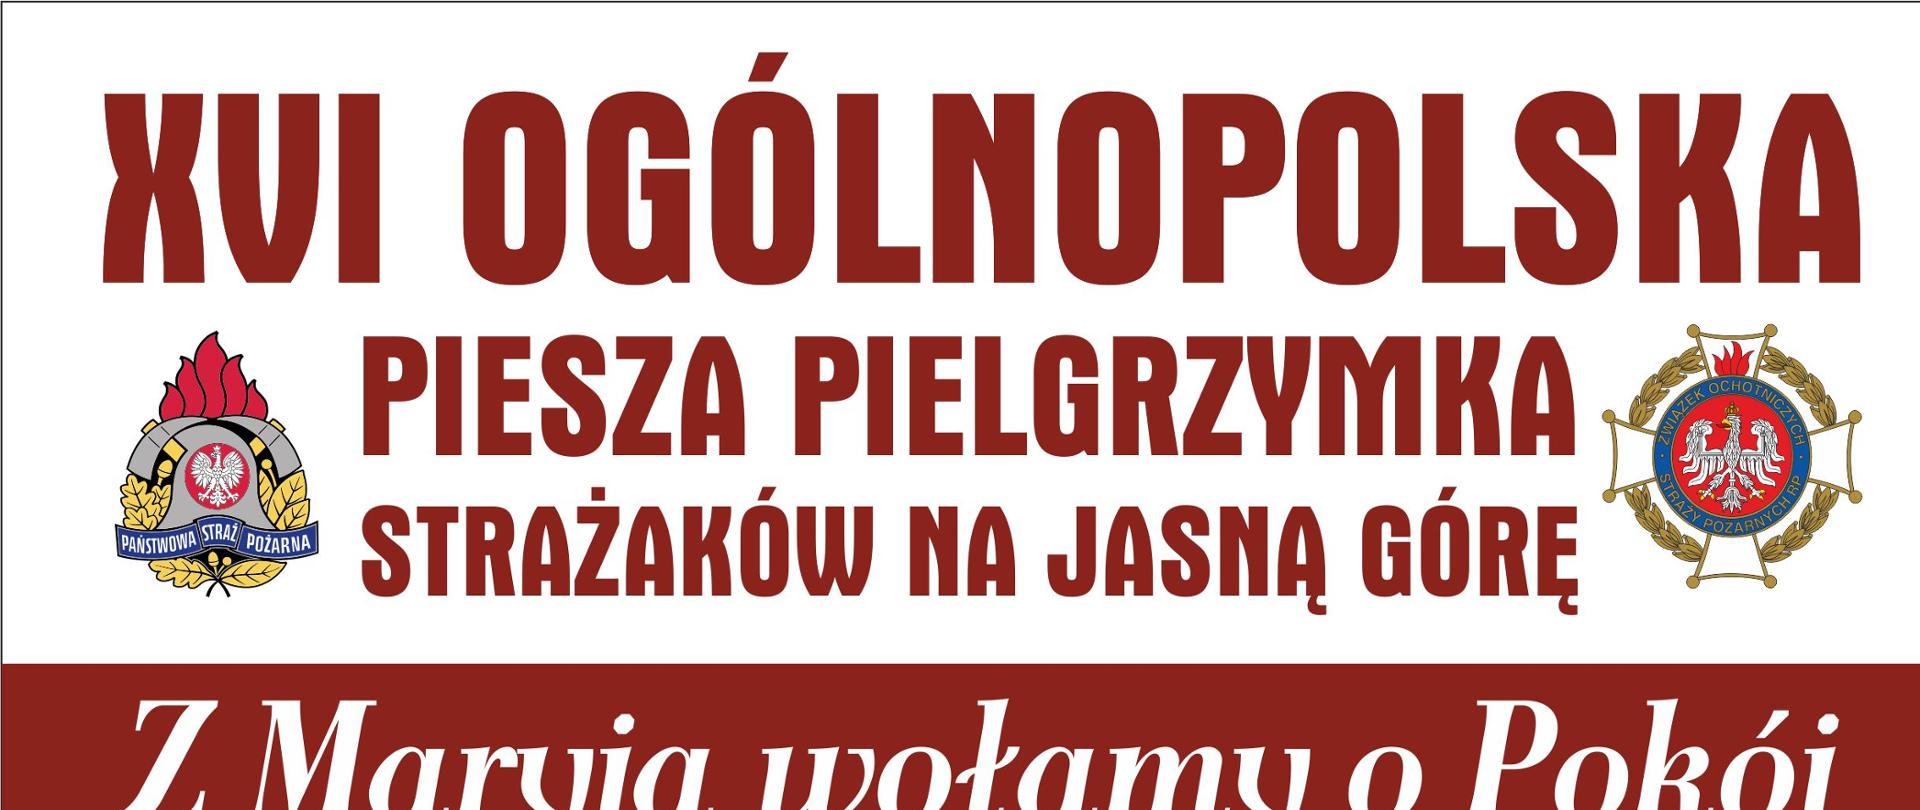 Zdjęcie przedstawia oficjalny plakat XVI ogólnopolskiej pieszej pielgrzymki strażaków na Jasną Górę